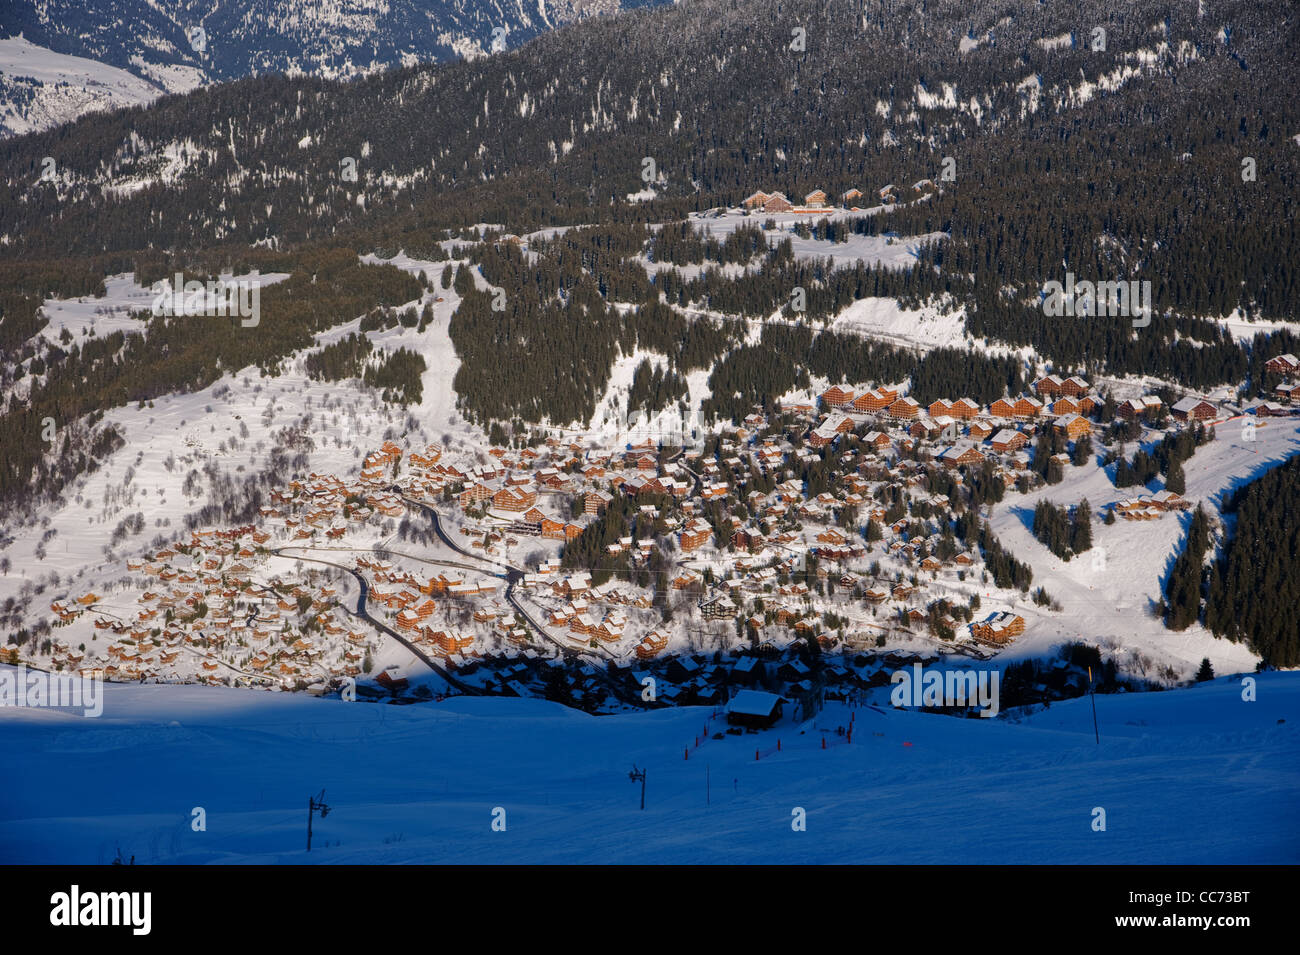 Méribel et Courchevel dans les Trois Vallées (3 vallées) stations de ski dans la vallée de la Tarentaise dans les Alpes françaises. Décembre 2011 Banque D'Images